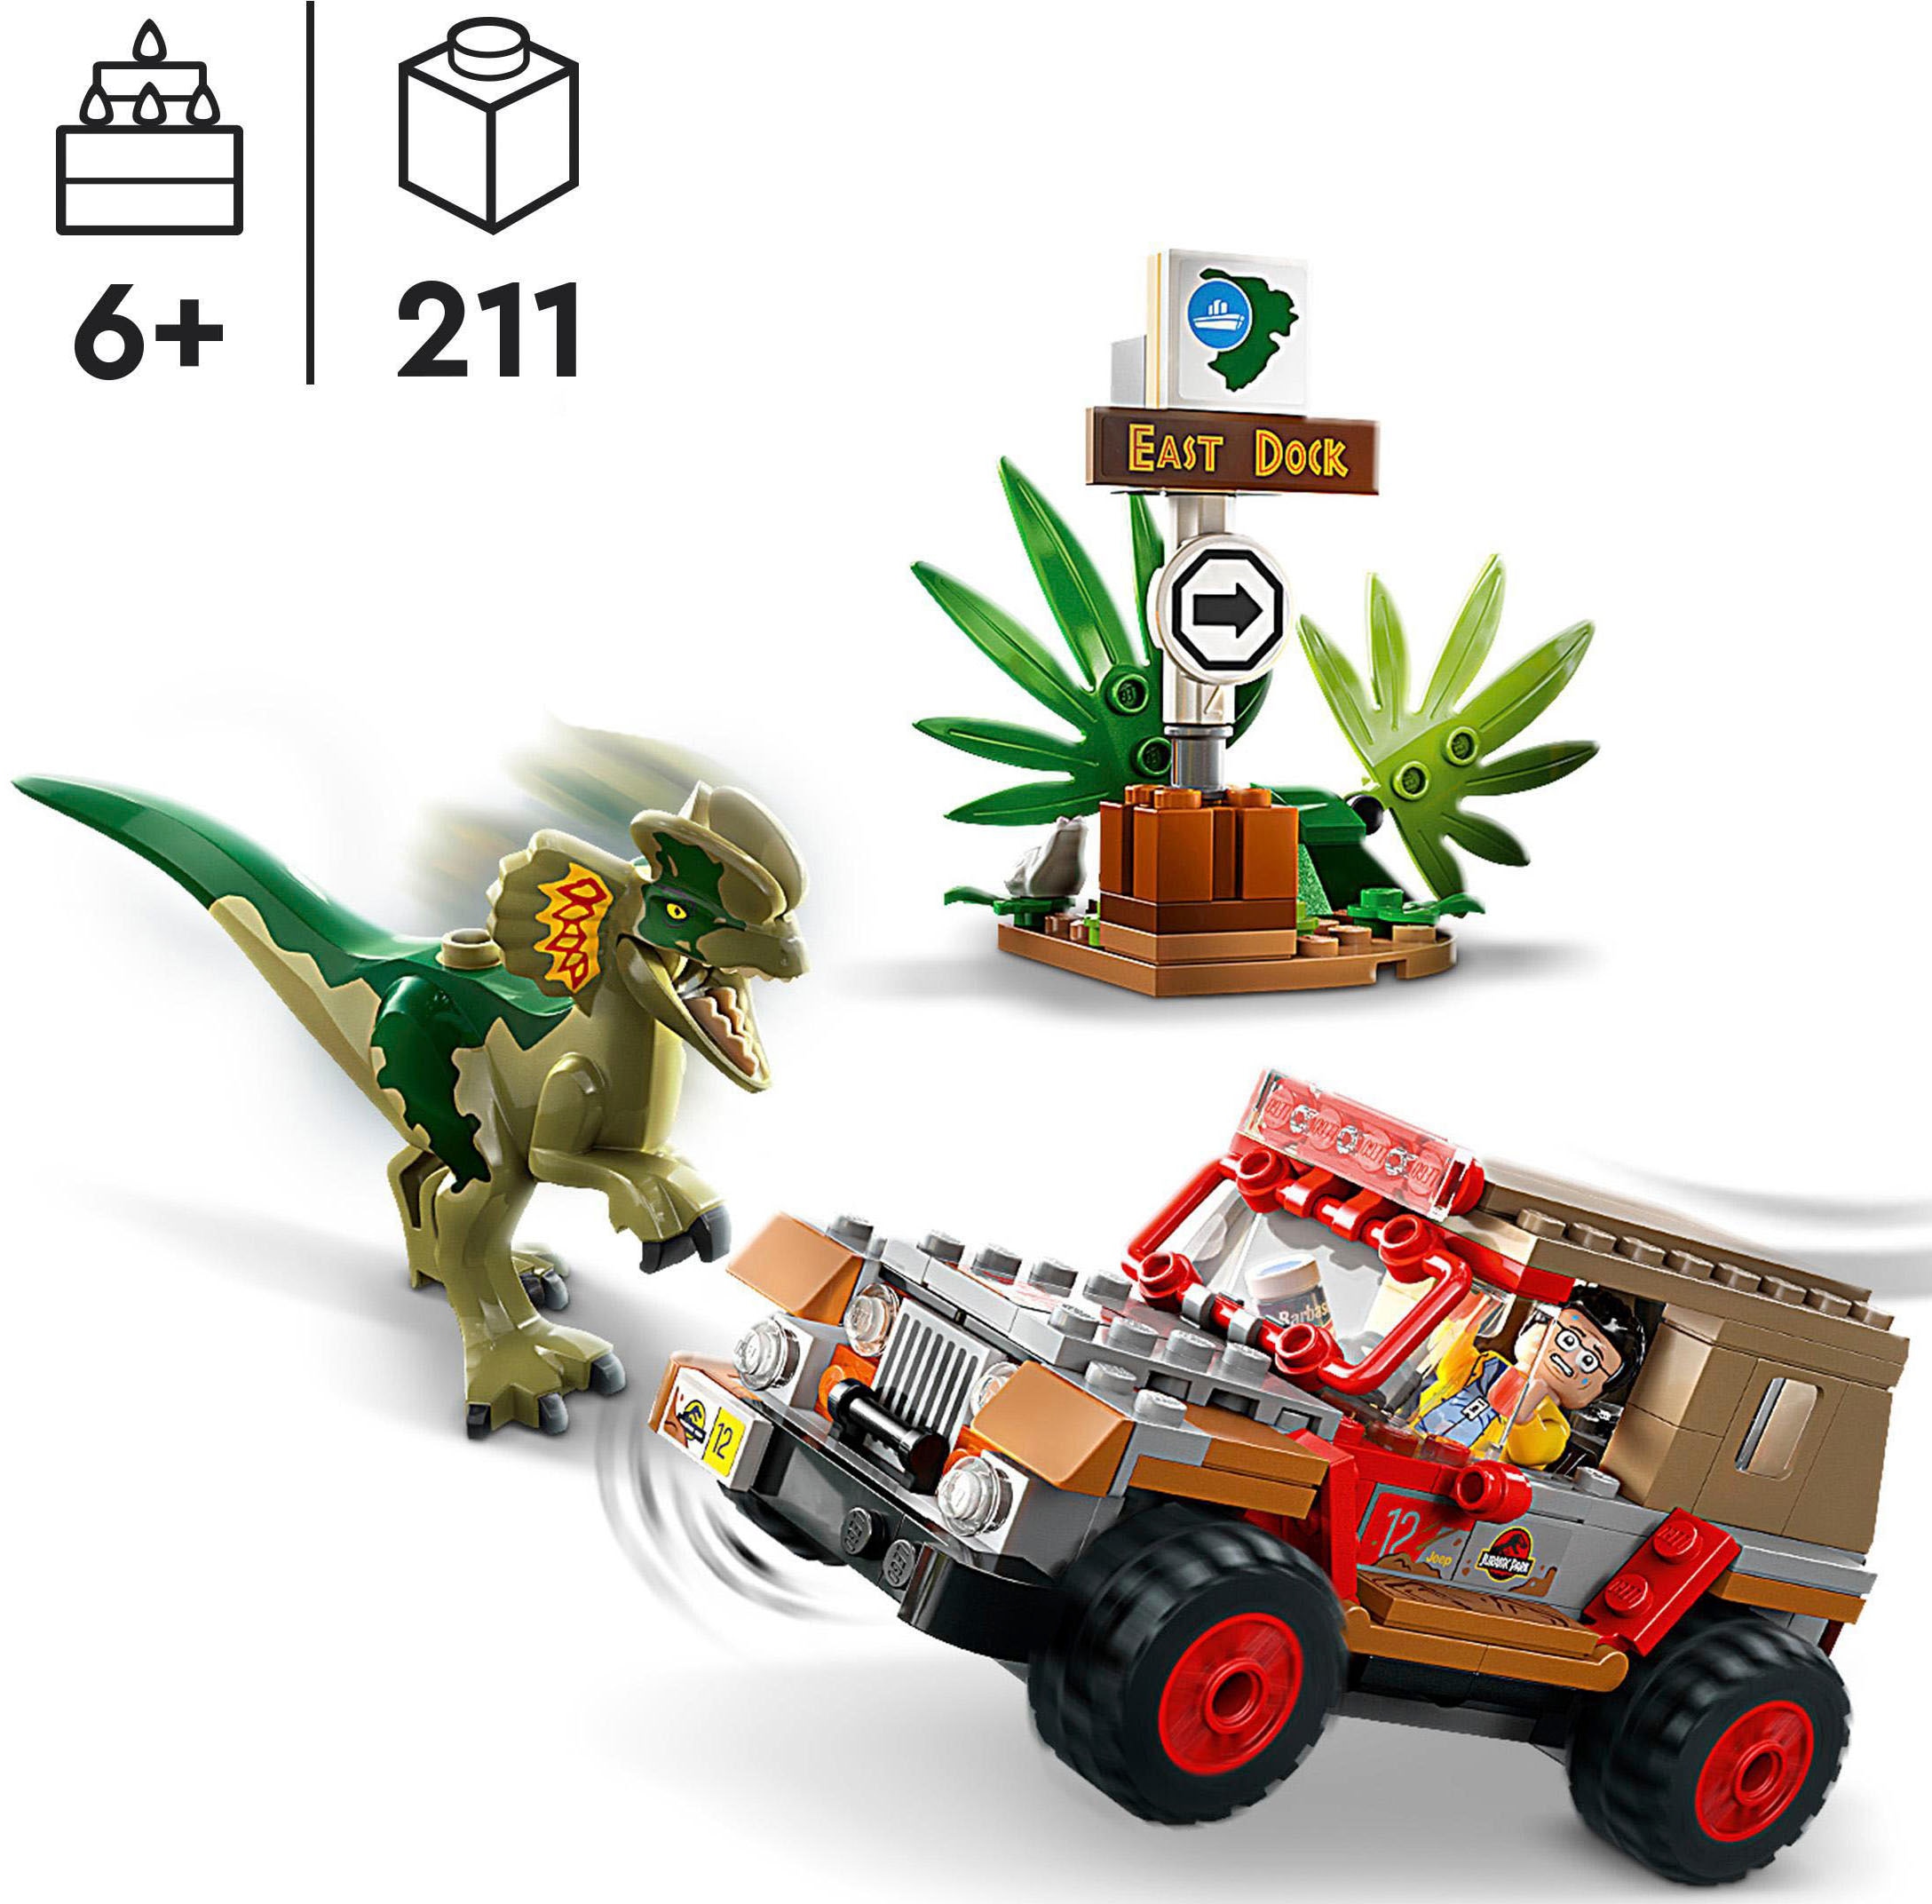 LEGO® Konstruktionsspielsteine »Hinterhalt des Dilophosaurus (76958), LEGO® Jurassic Park«, (211 St.), Made in Europe